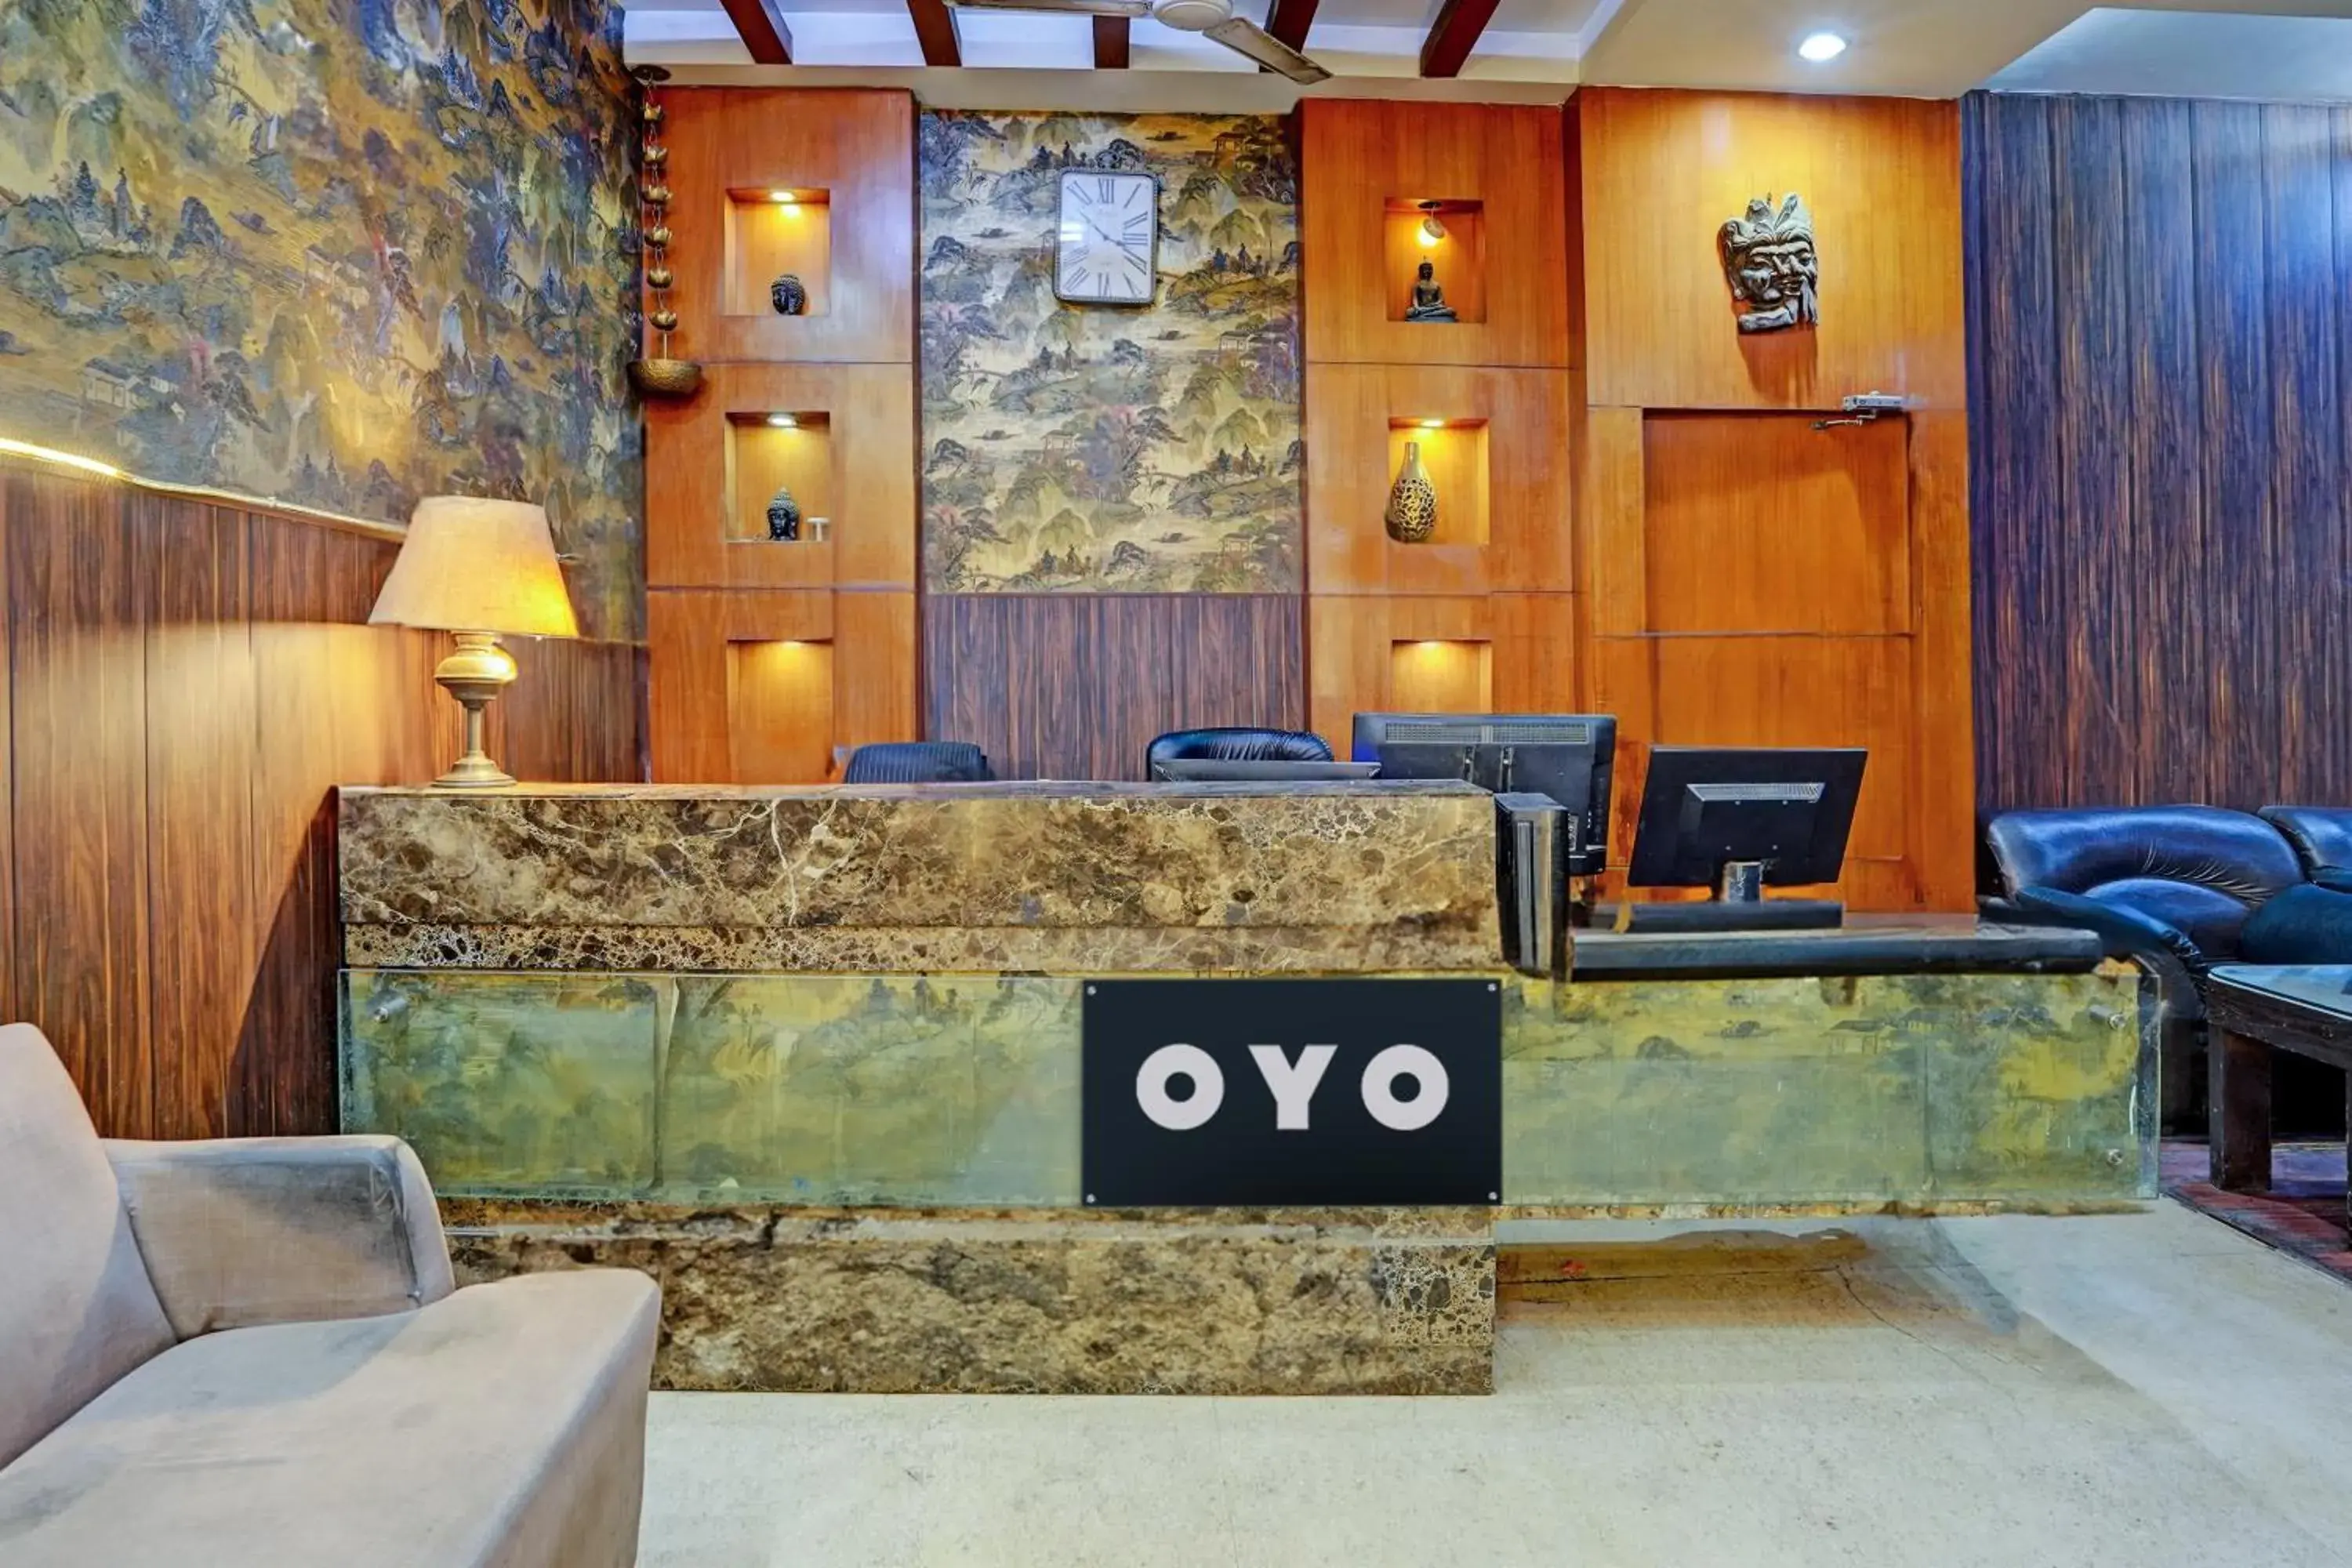 Lobby or reception, Lobby/Reception in OYO 421 One Hotel